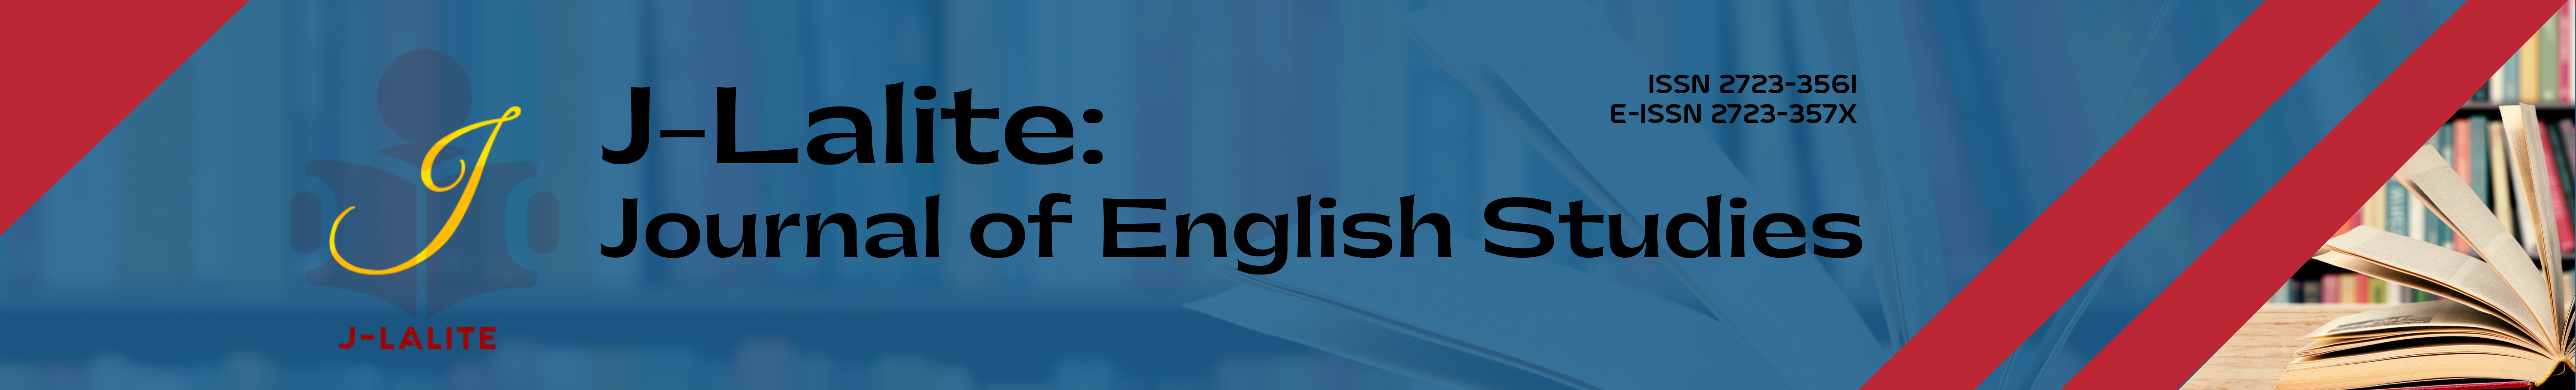 J-Lalite: Journal of English Studies